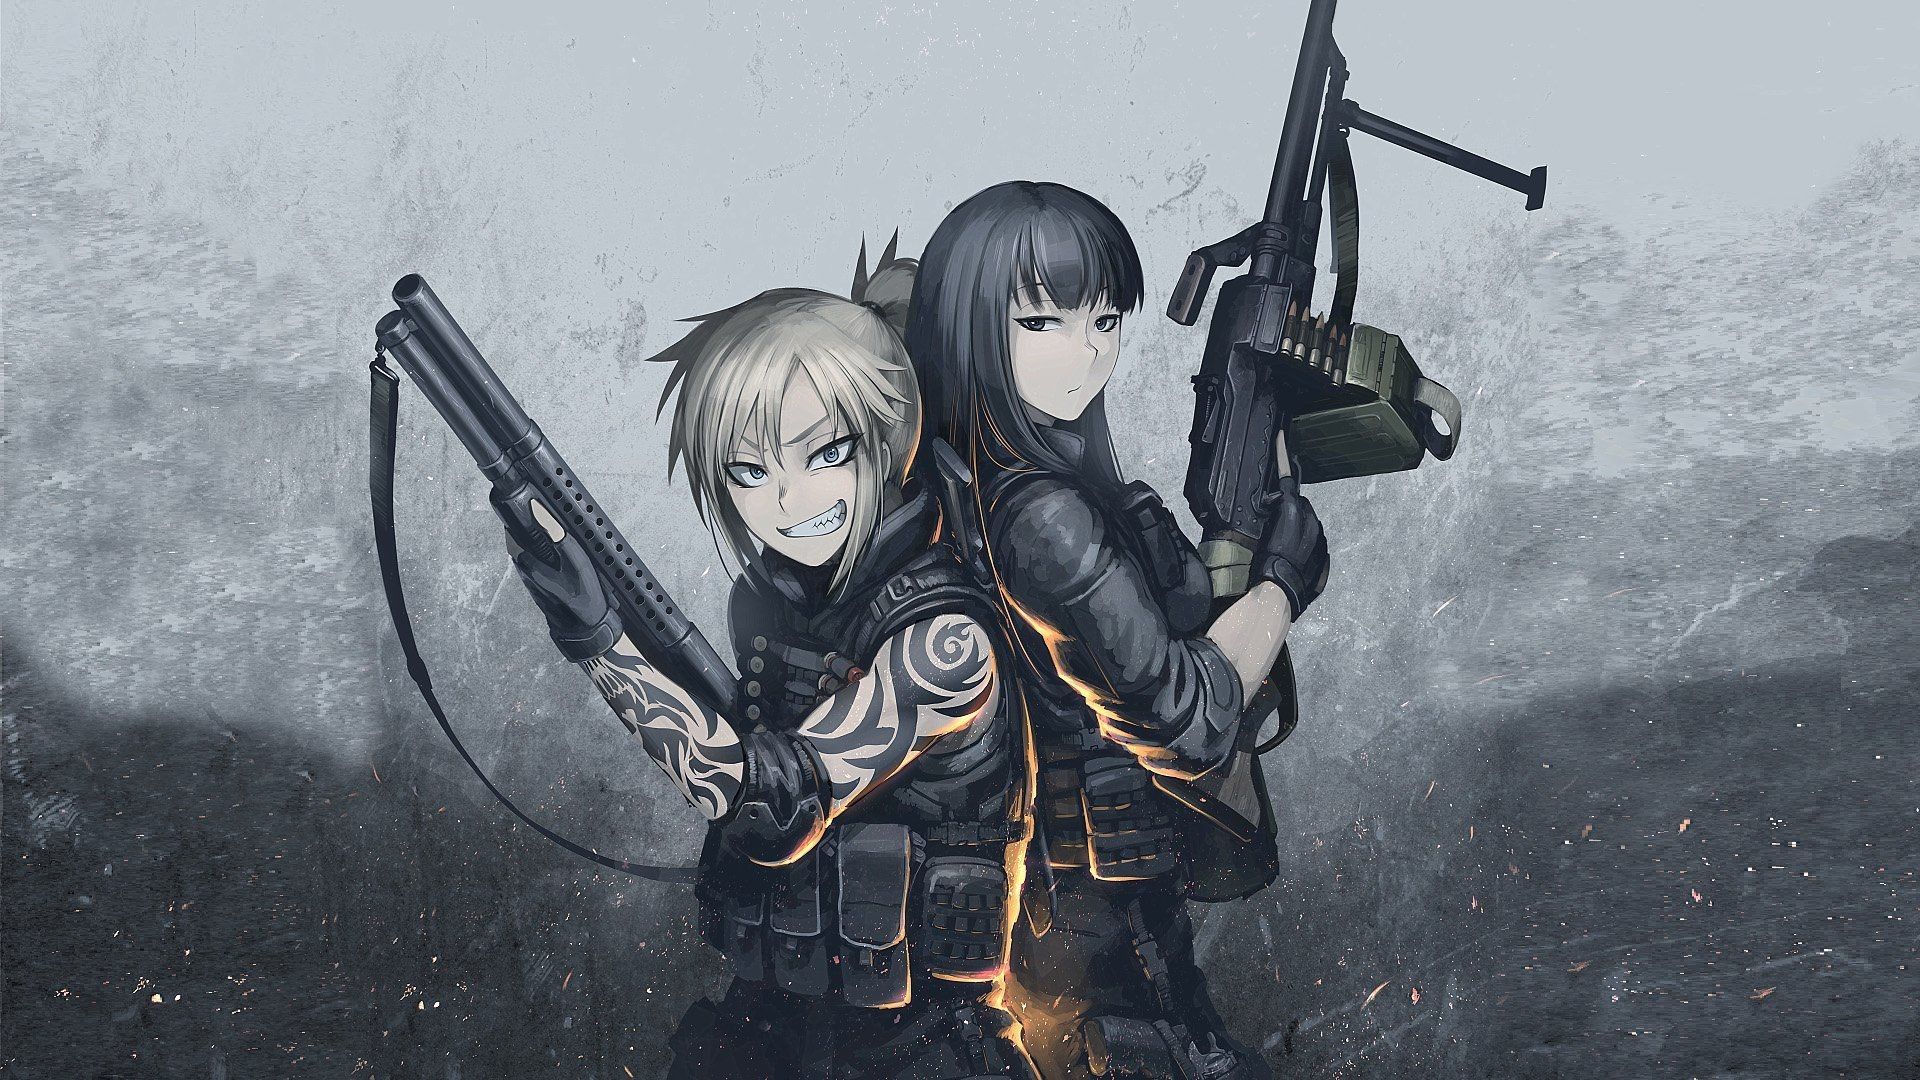 Battlefield 1 Anime Wallpaper Lovely Battlefield 1 Anime Art 60fps 1080p  For Wallpaper Engine